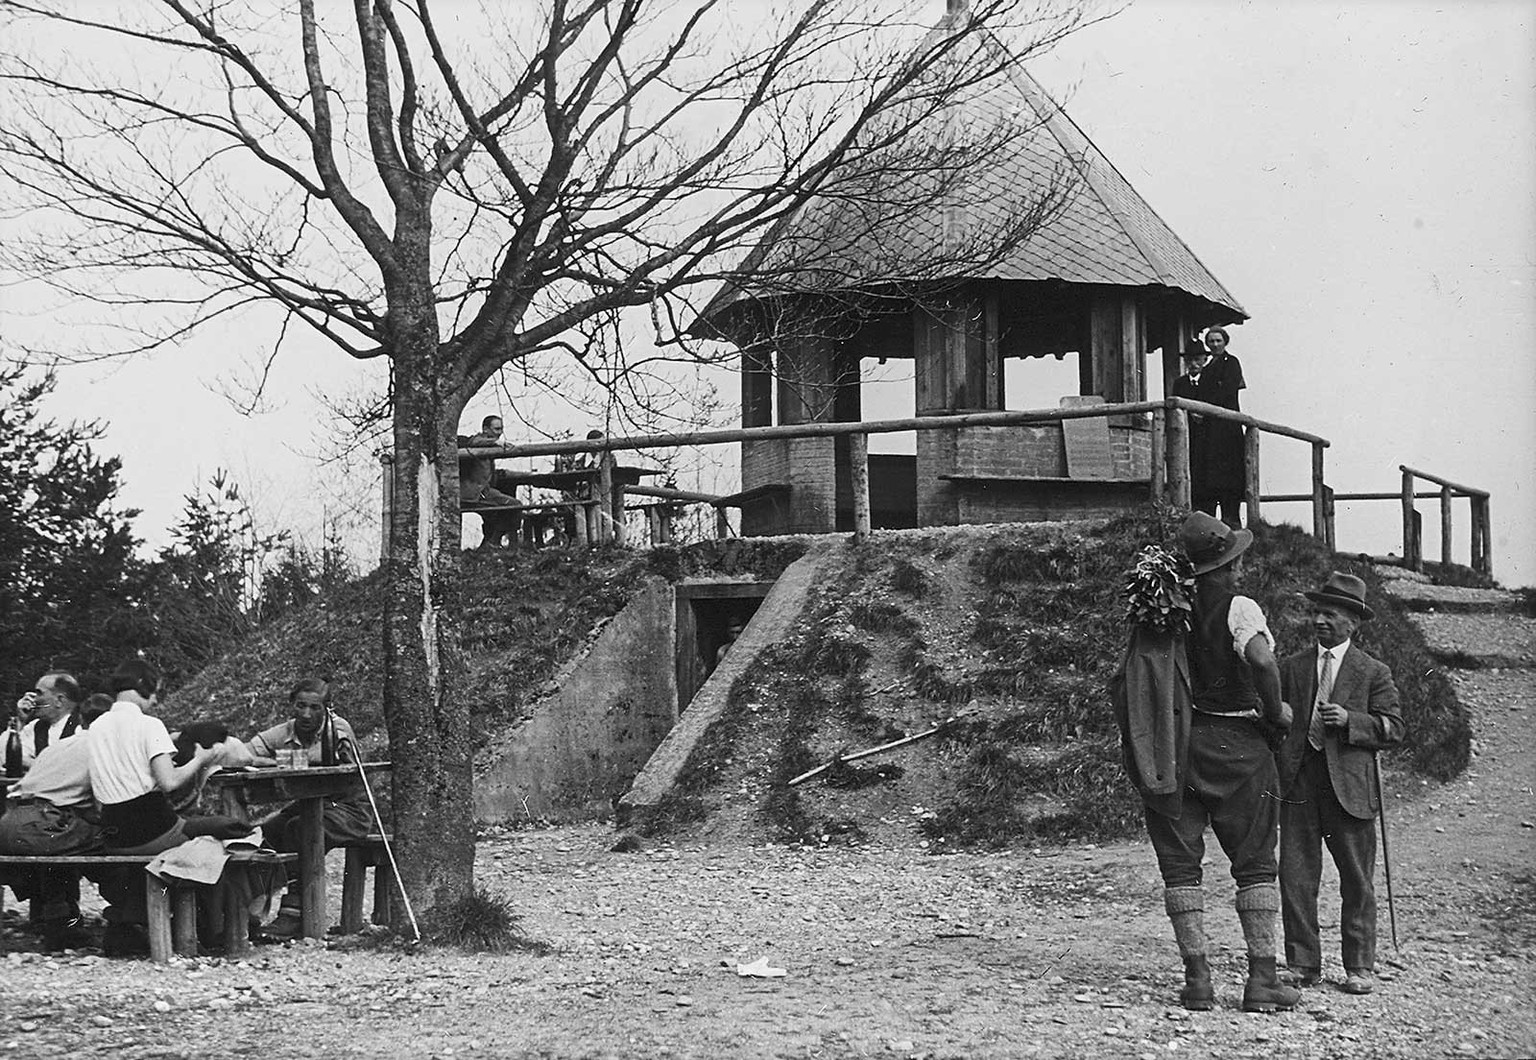 Tour de guet d’Albis, 1935, photographiée par Leo Wehrli.
https://ba.e-pics.ethz.ch/catalog/ETHBIB.Bildarchiv/r/70984/viewmode=infoview